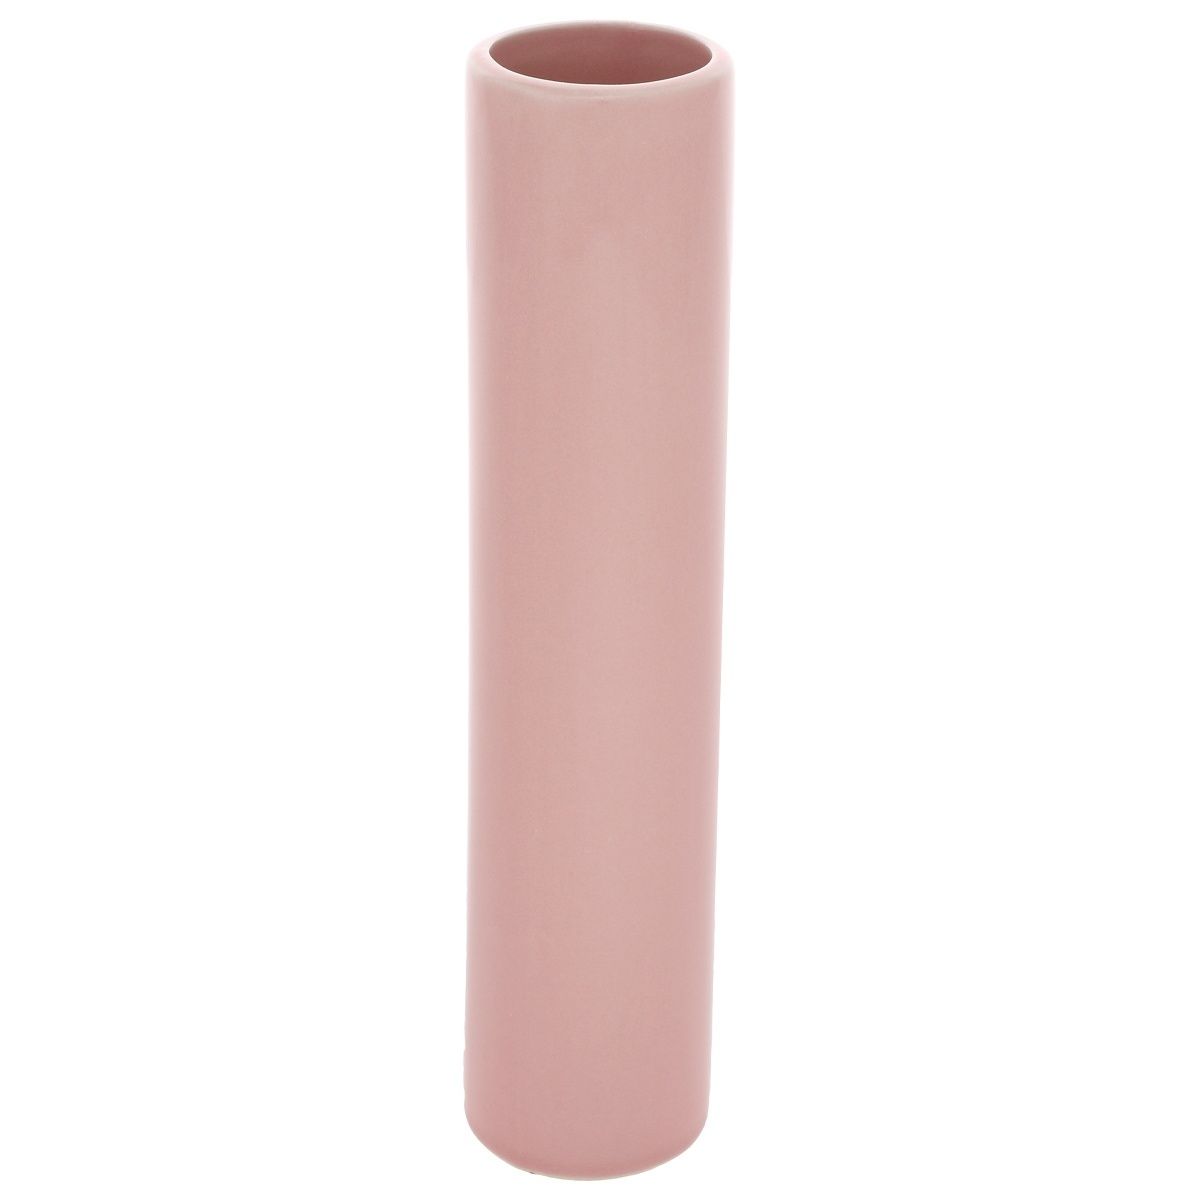 Keramická váza Tube, 5 x 24 x 5 cm, růžová - 4home.cz